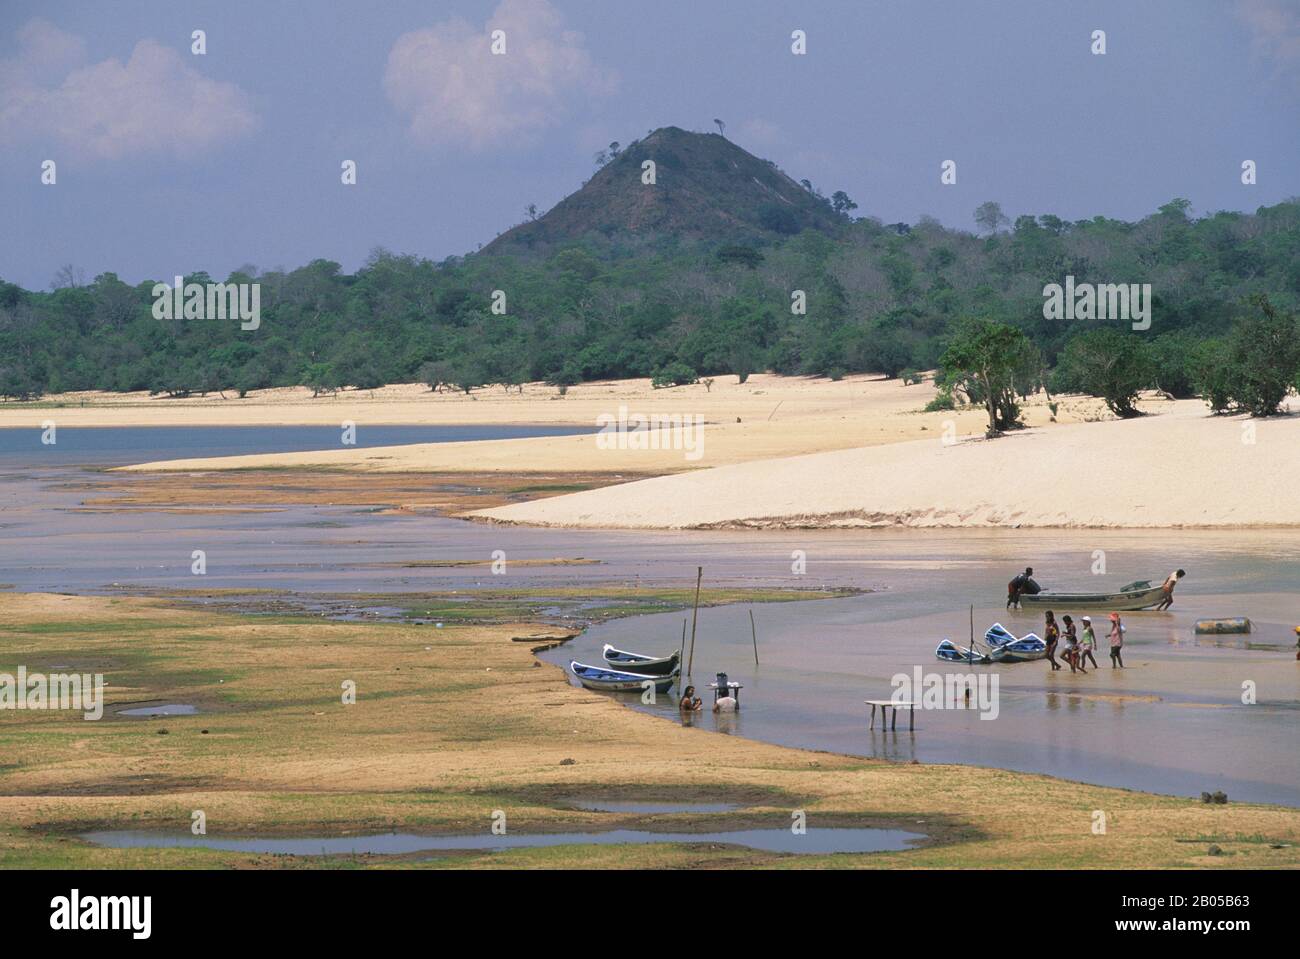 BRAZIL, AMAZON RIVER, RIO TAPAJOS, ALTER DO CHAO, WHITE SAND BEACH Stock Photo